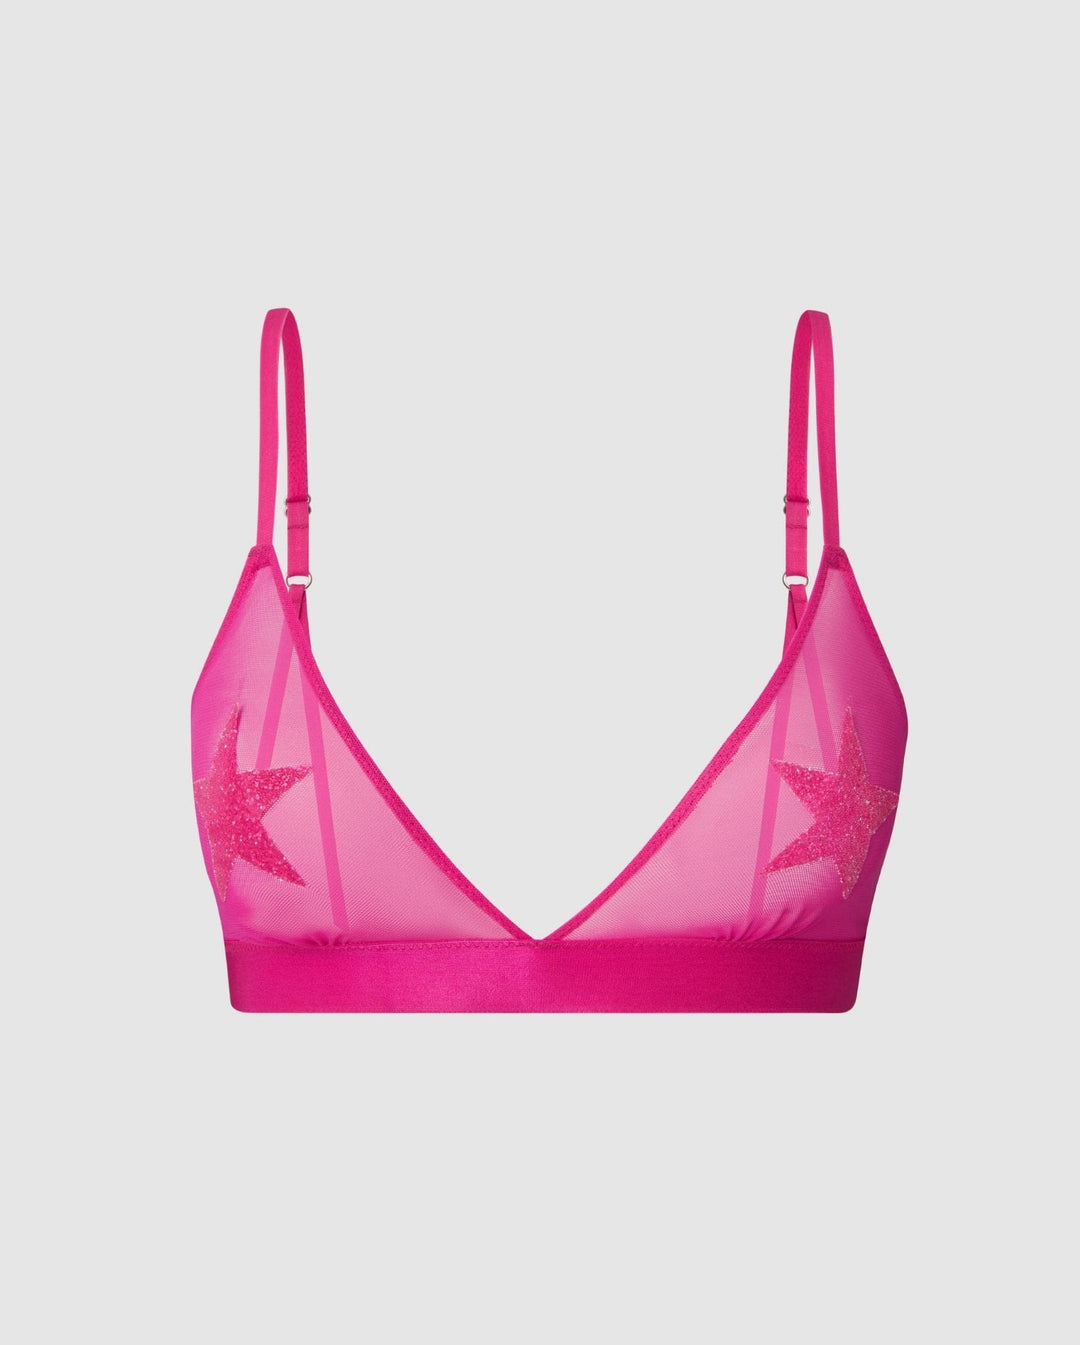 Hot Pink Triangle Bralette • Understatement Underwear